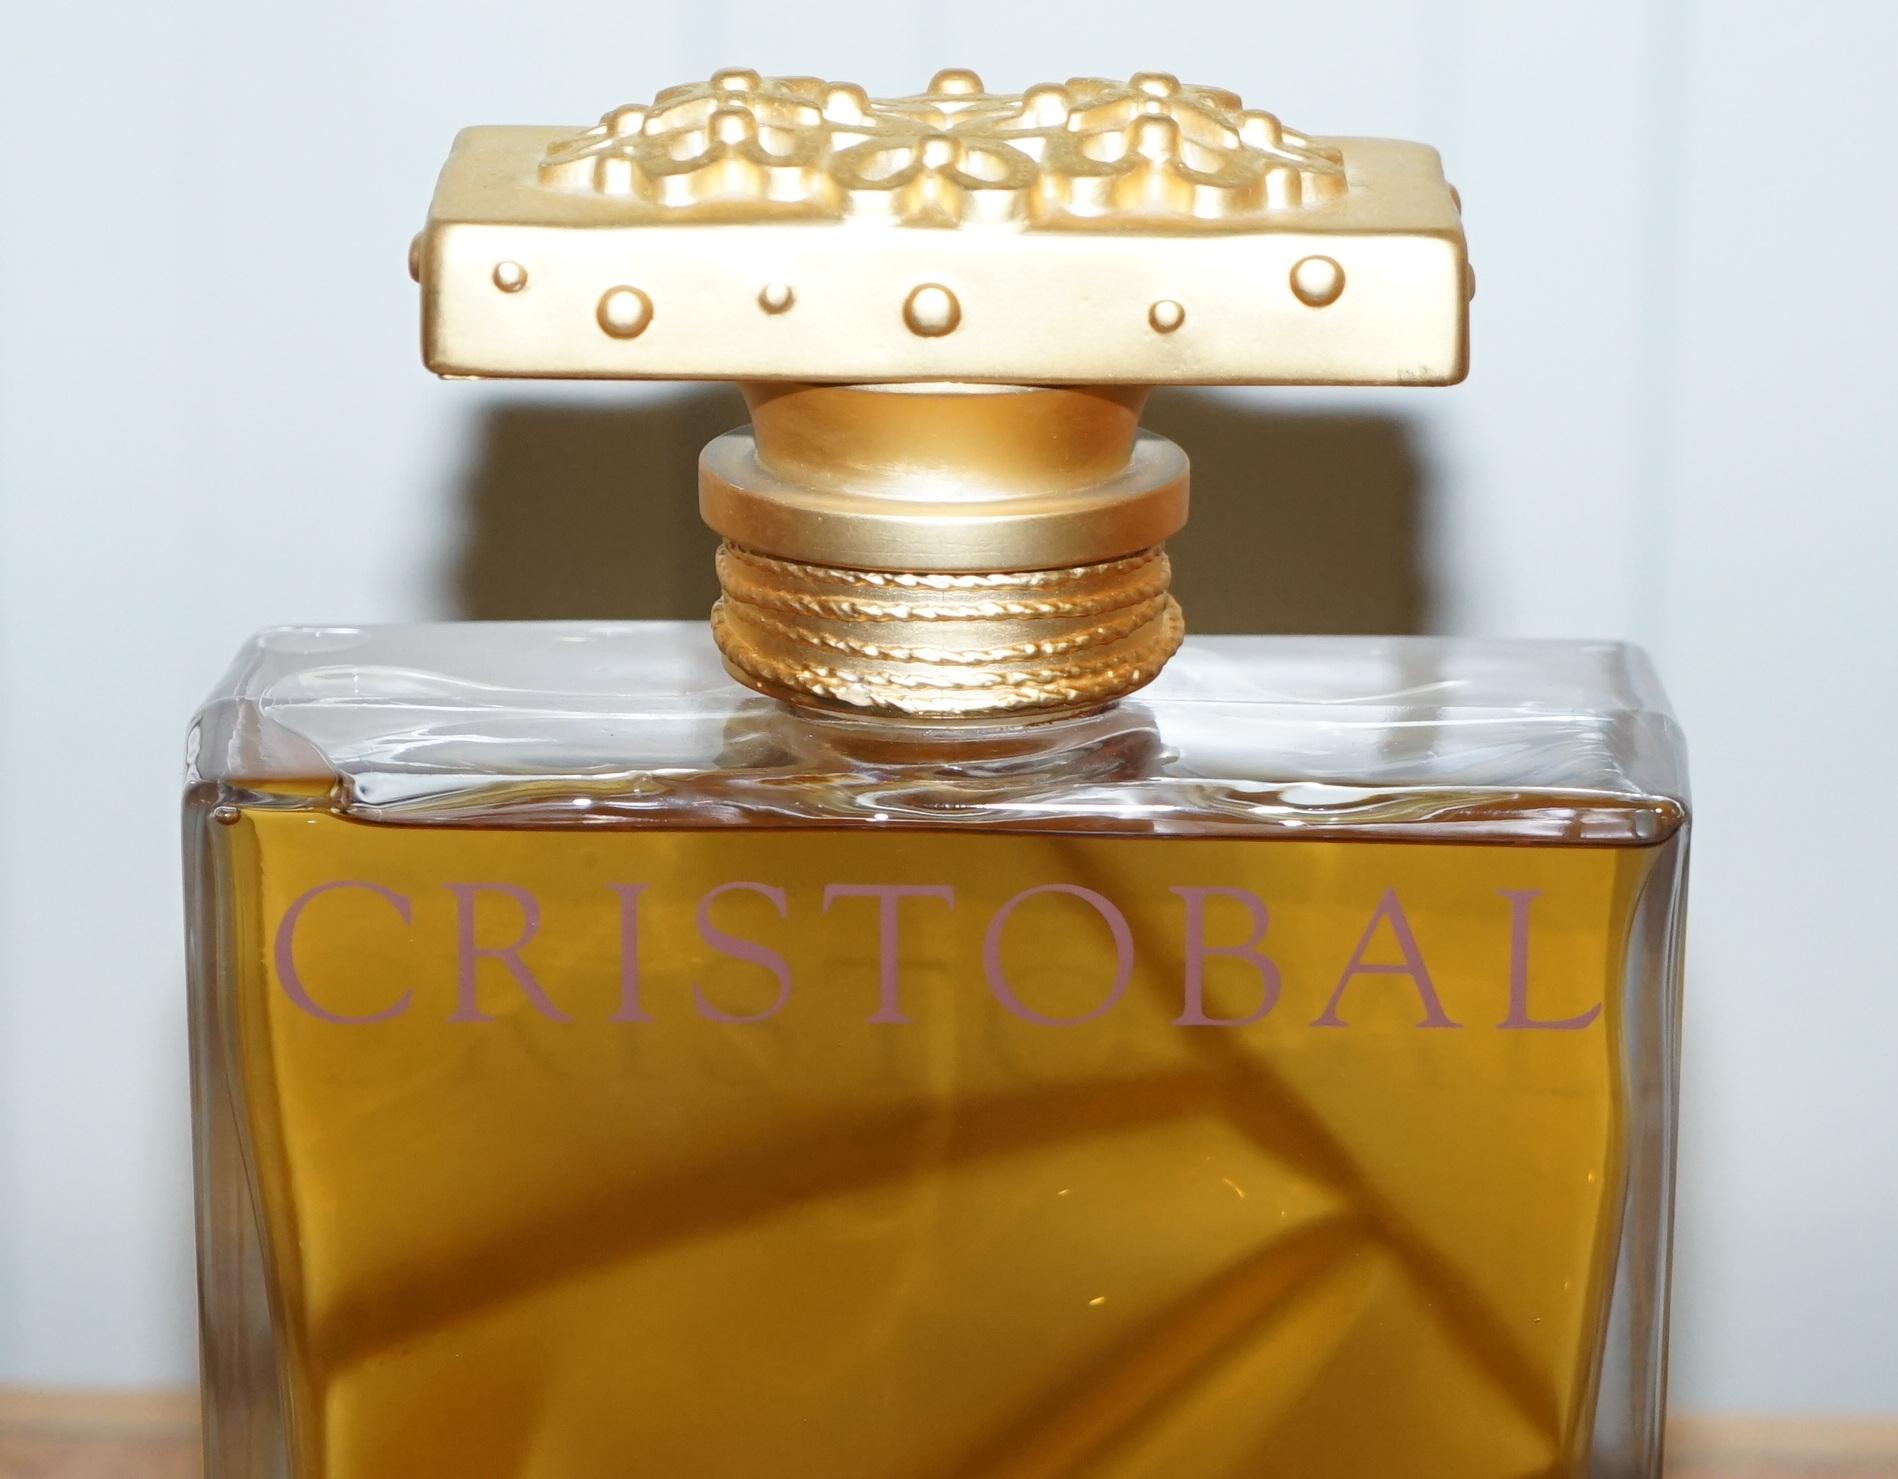 cristobal balenciaga parfum